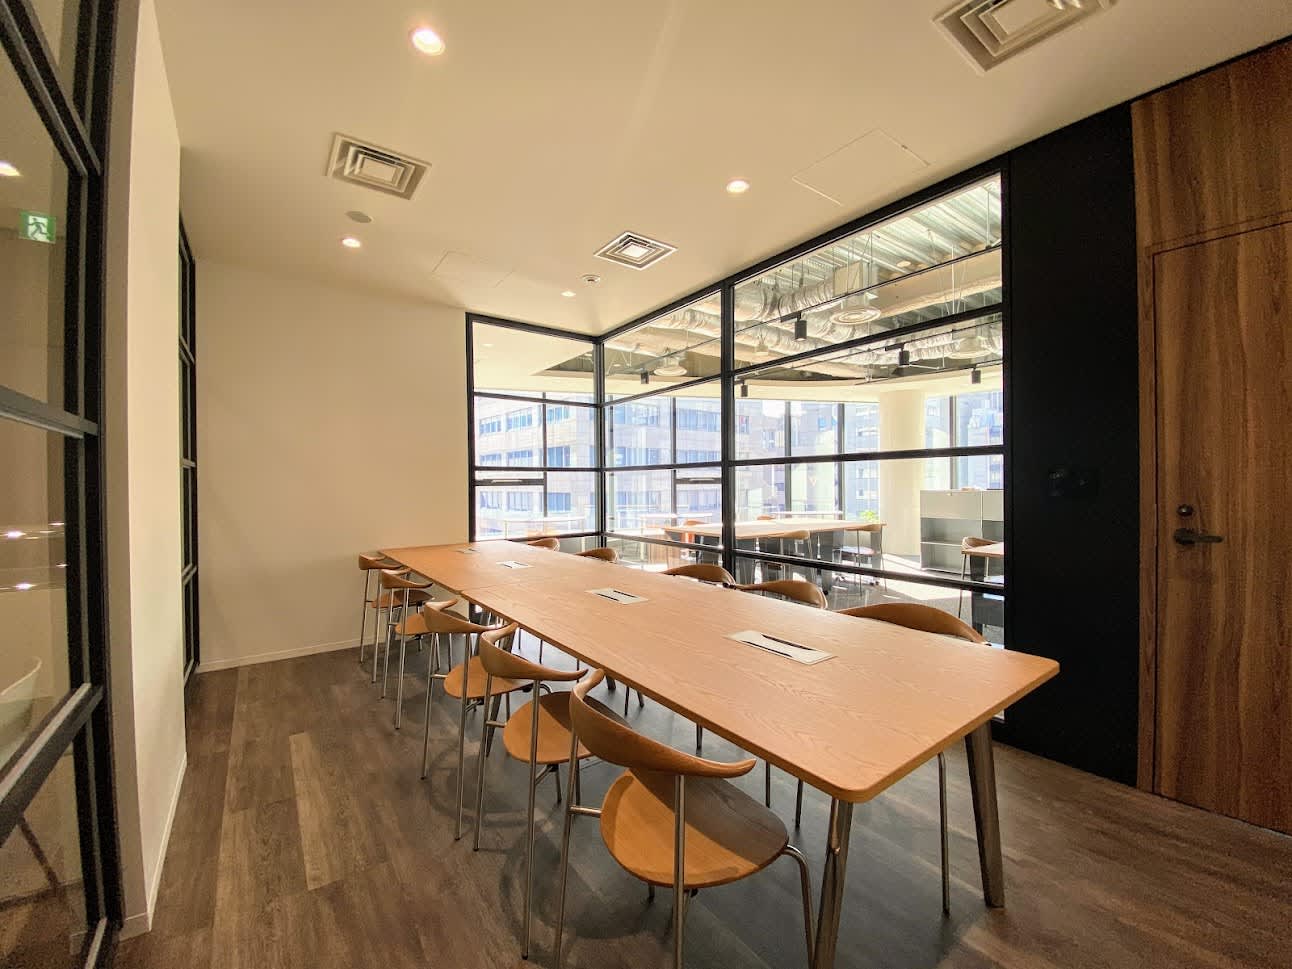 京橋宝町PREXのセットアップオフィスのミーティングスペース(受付・会議室と床材のみのハーフセットアップです。画像にある什器はイメージで含まれません)